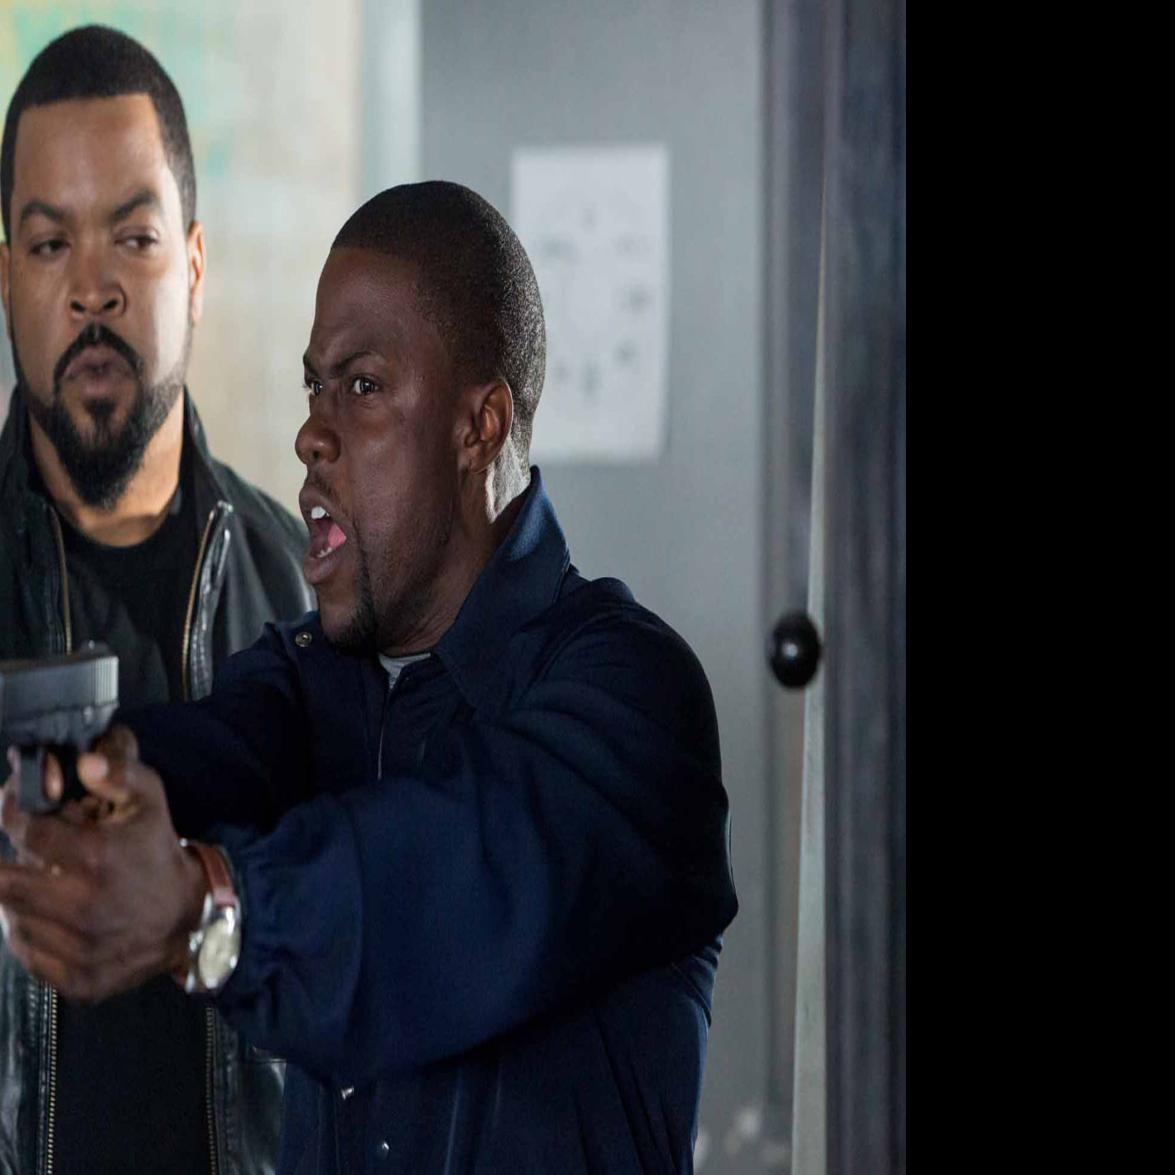 Совместная поездка 3. Ice Cube 2013. АИС Къюб из мисия в Маями. Айс Кьюб в форсаже. Кевин Харт полицейский.